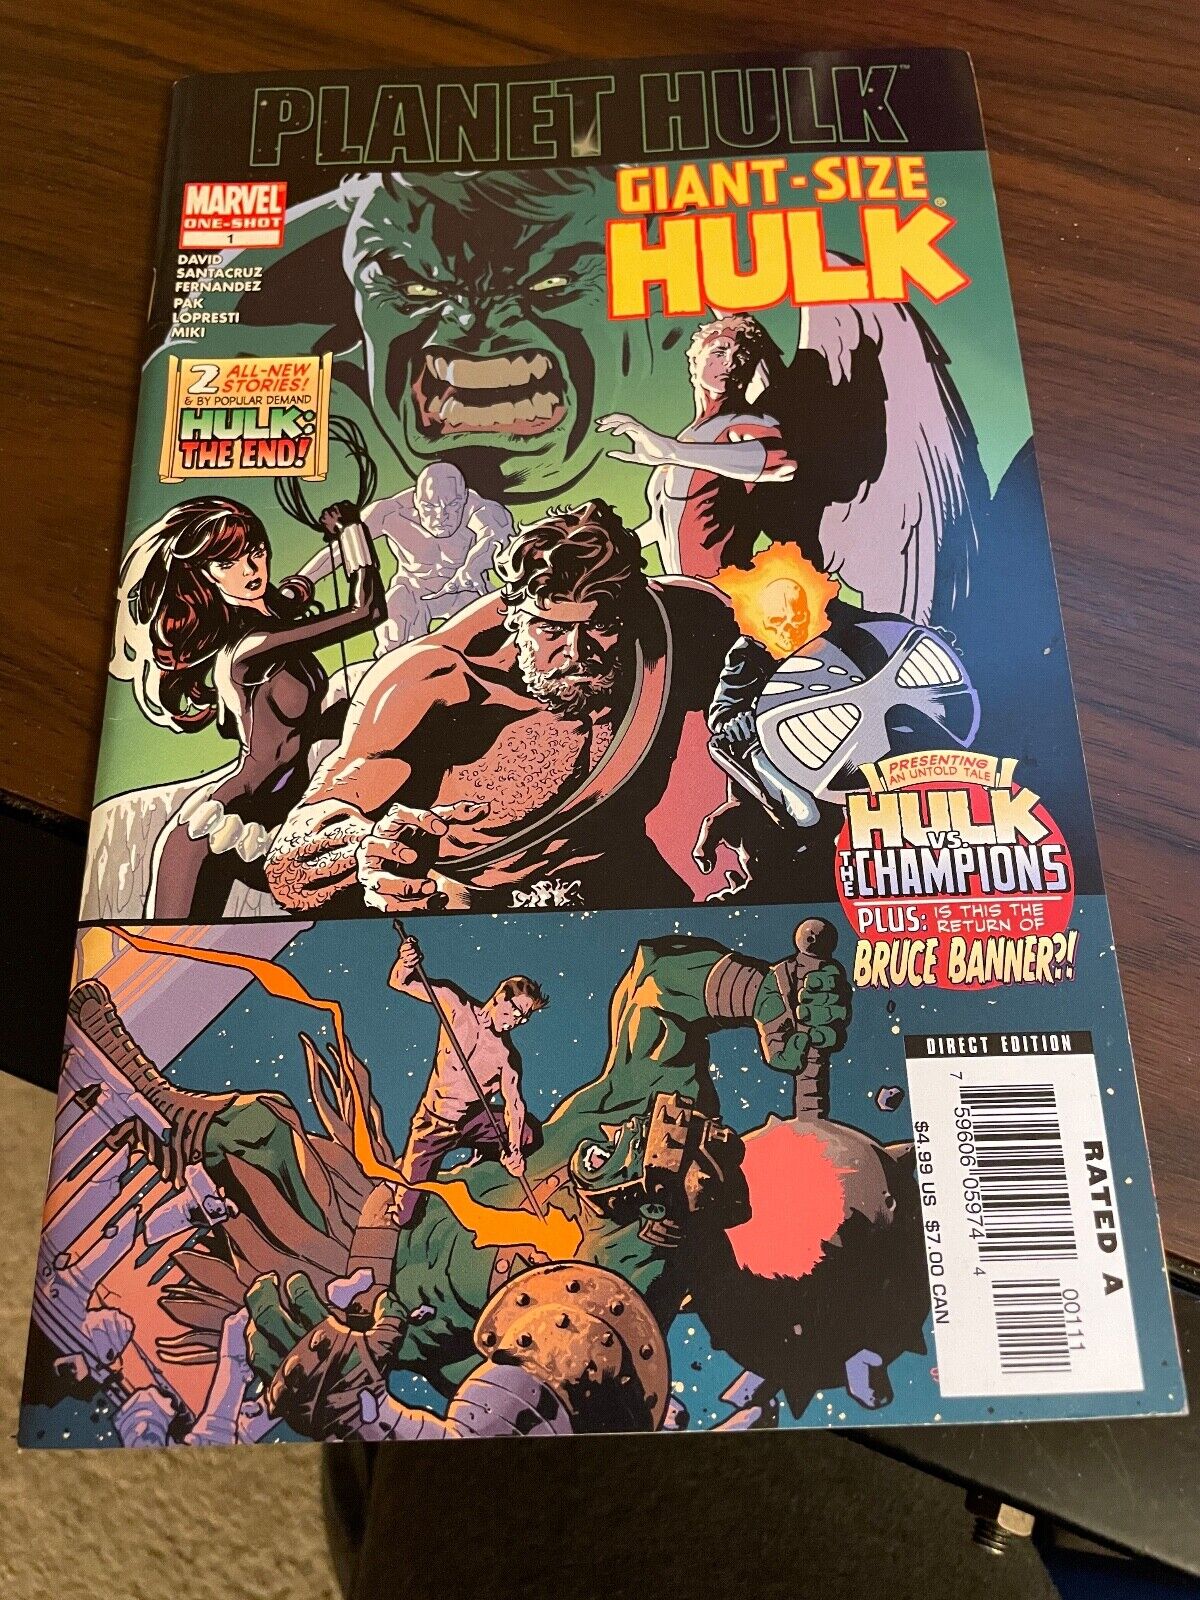 Giant Size HULK #1 One-Shot, Planet Hulk Marvel VF 2006